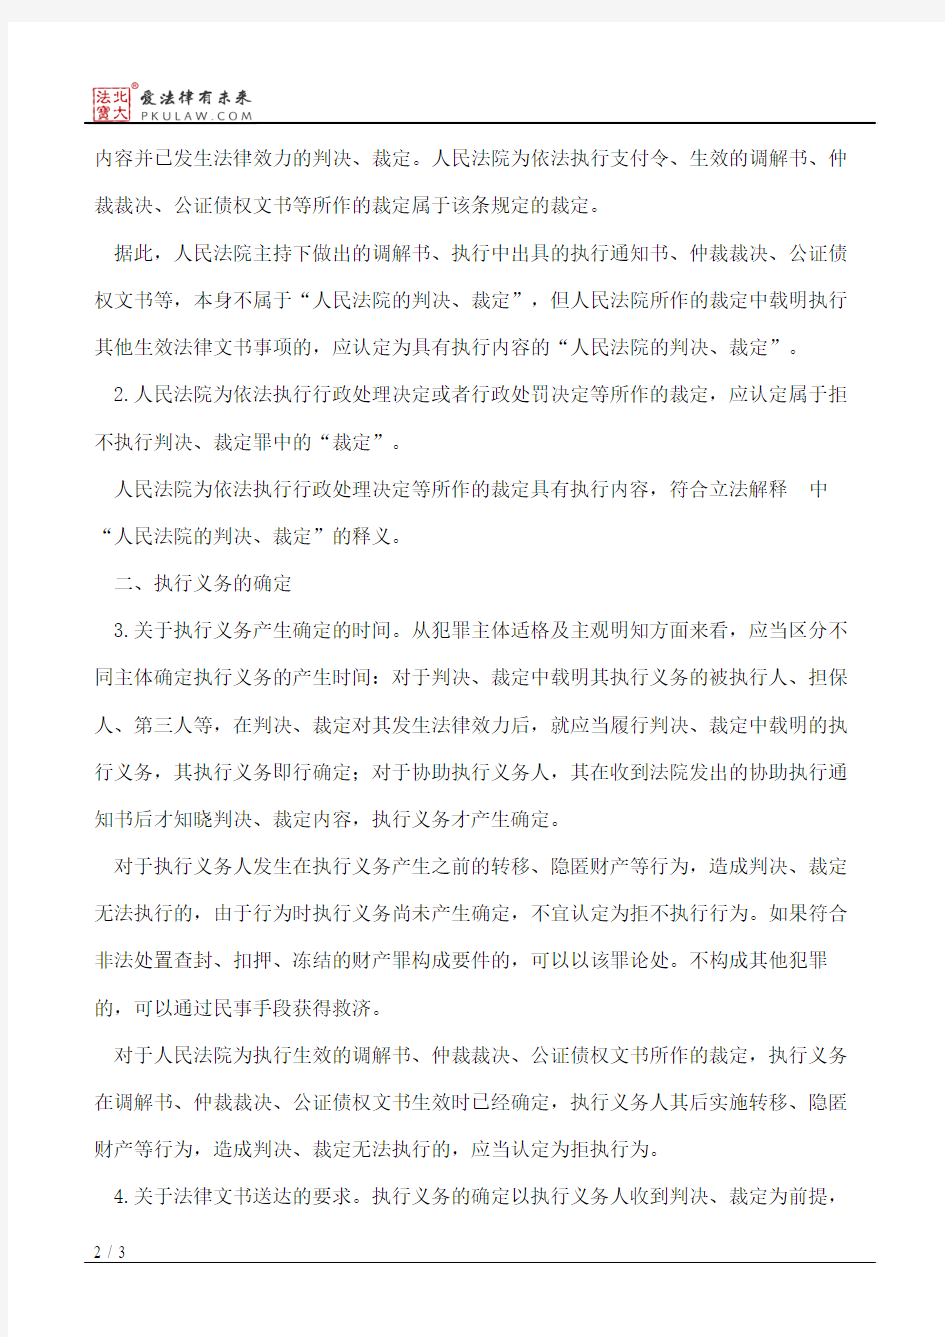 江苏省高级人民法院关于办理拒不执行判决、裁定犯罪案件若干问题的通知